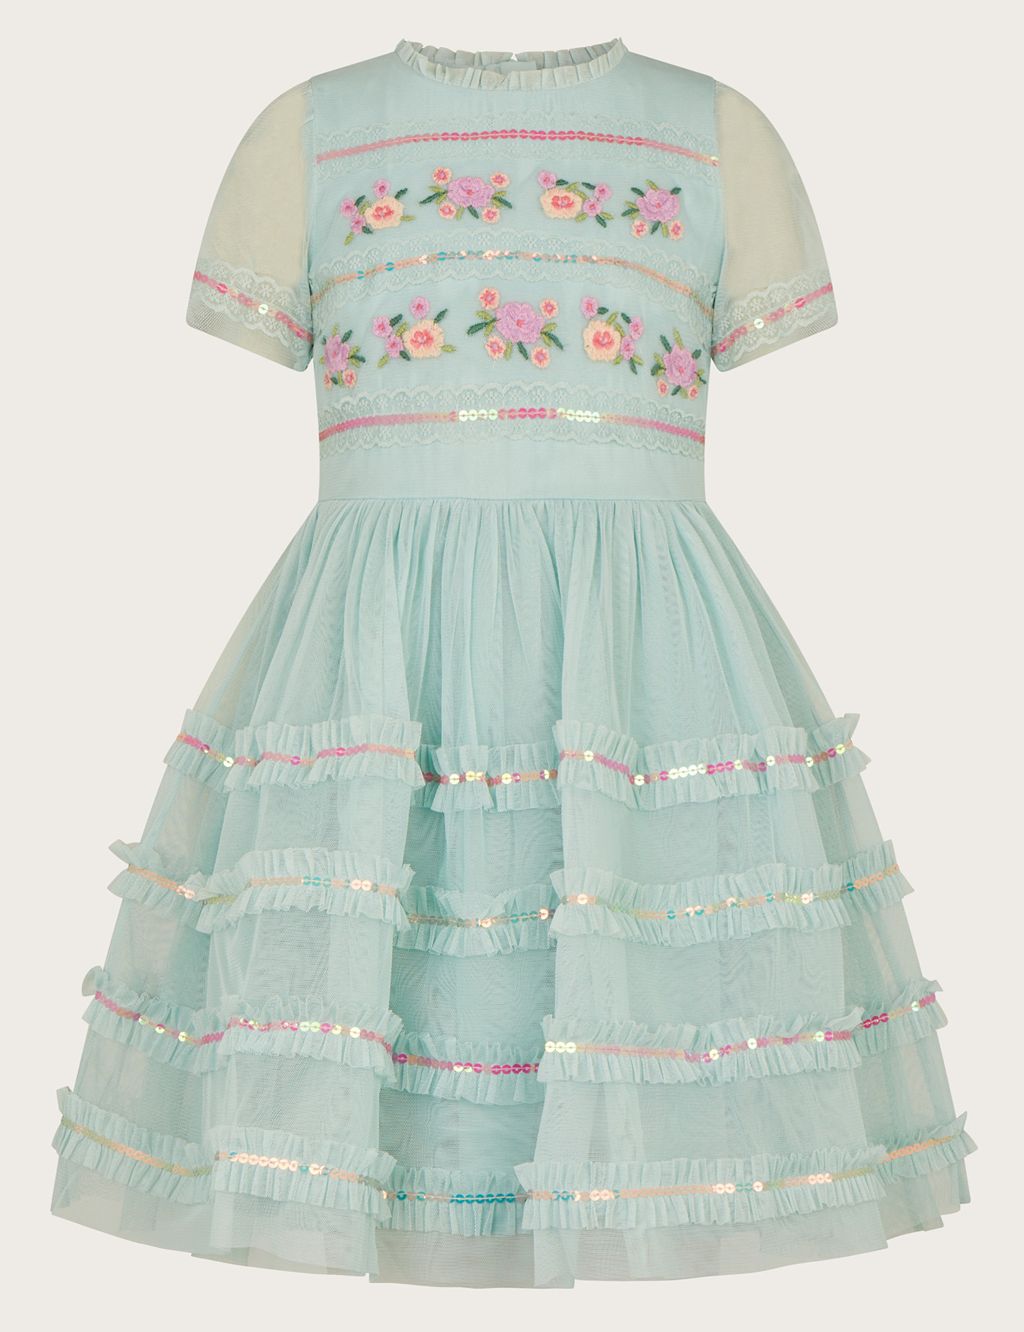 Embellished Tulle Dress (3-15 Yrs)